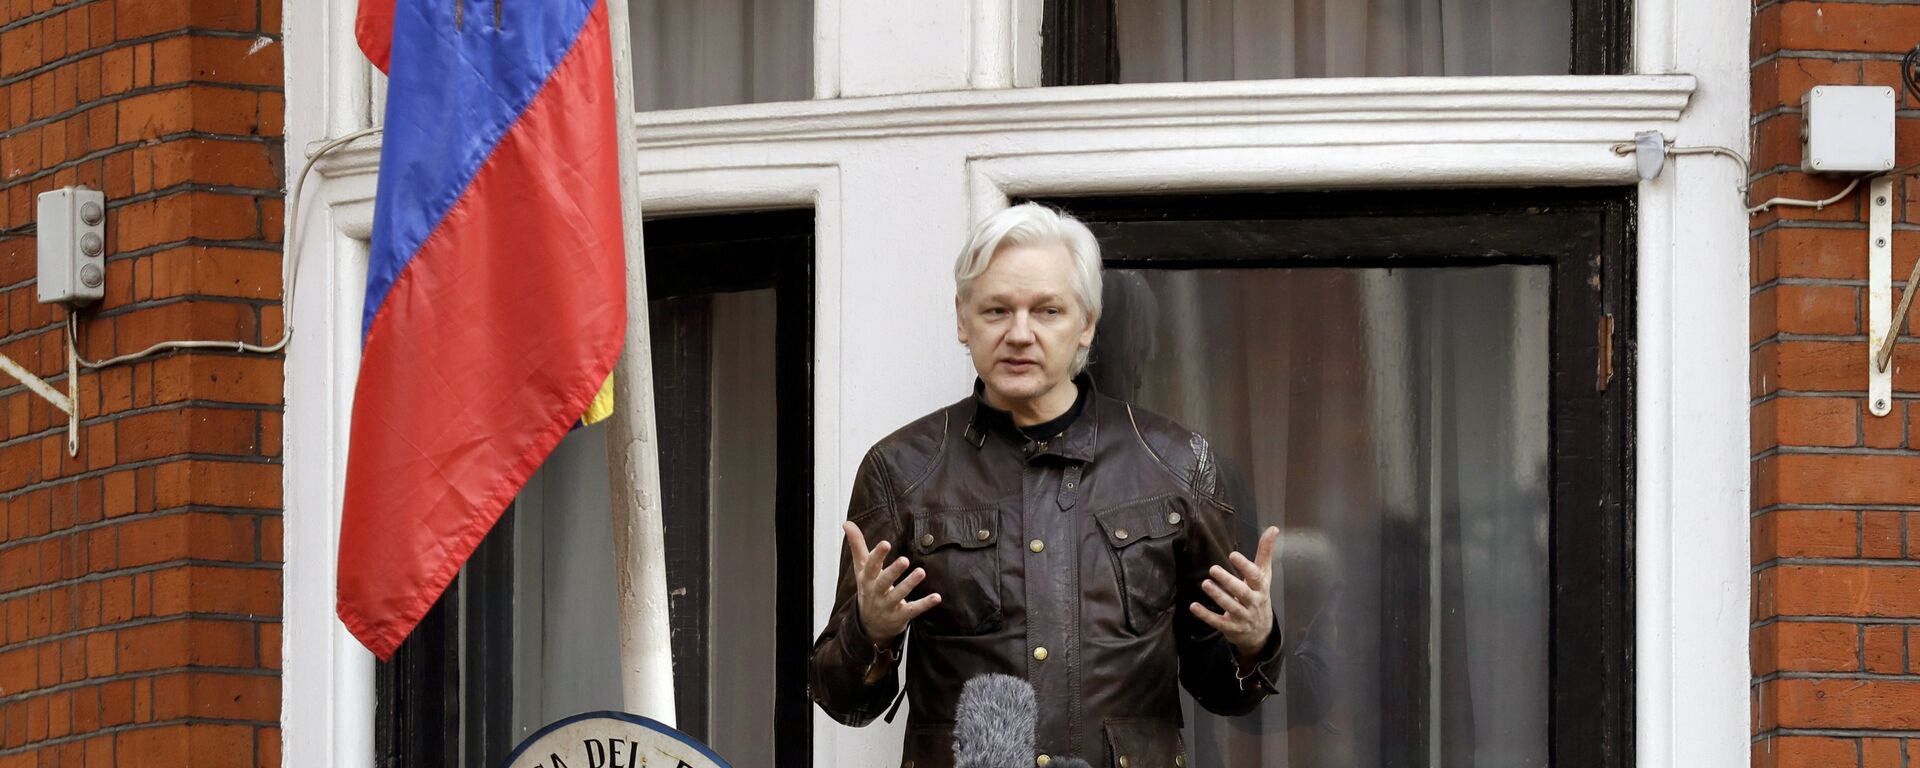 Оснивач Викиликса Џулијан Асанж у амбасади Еквадора у Лондону - Sputnik Србија, 1920, 09.06.2022